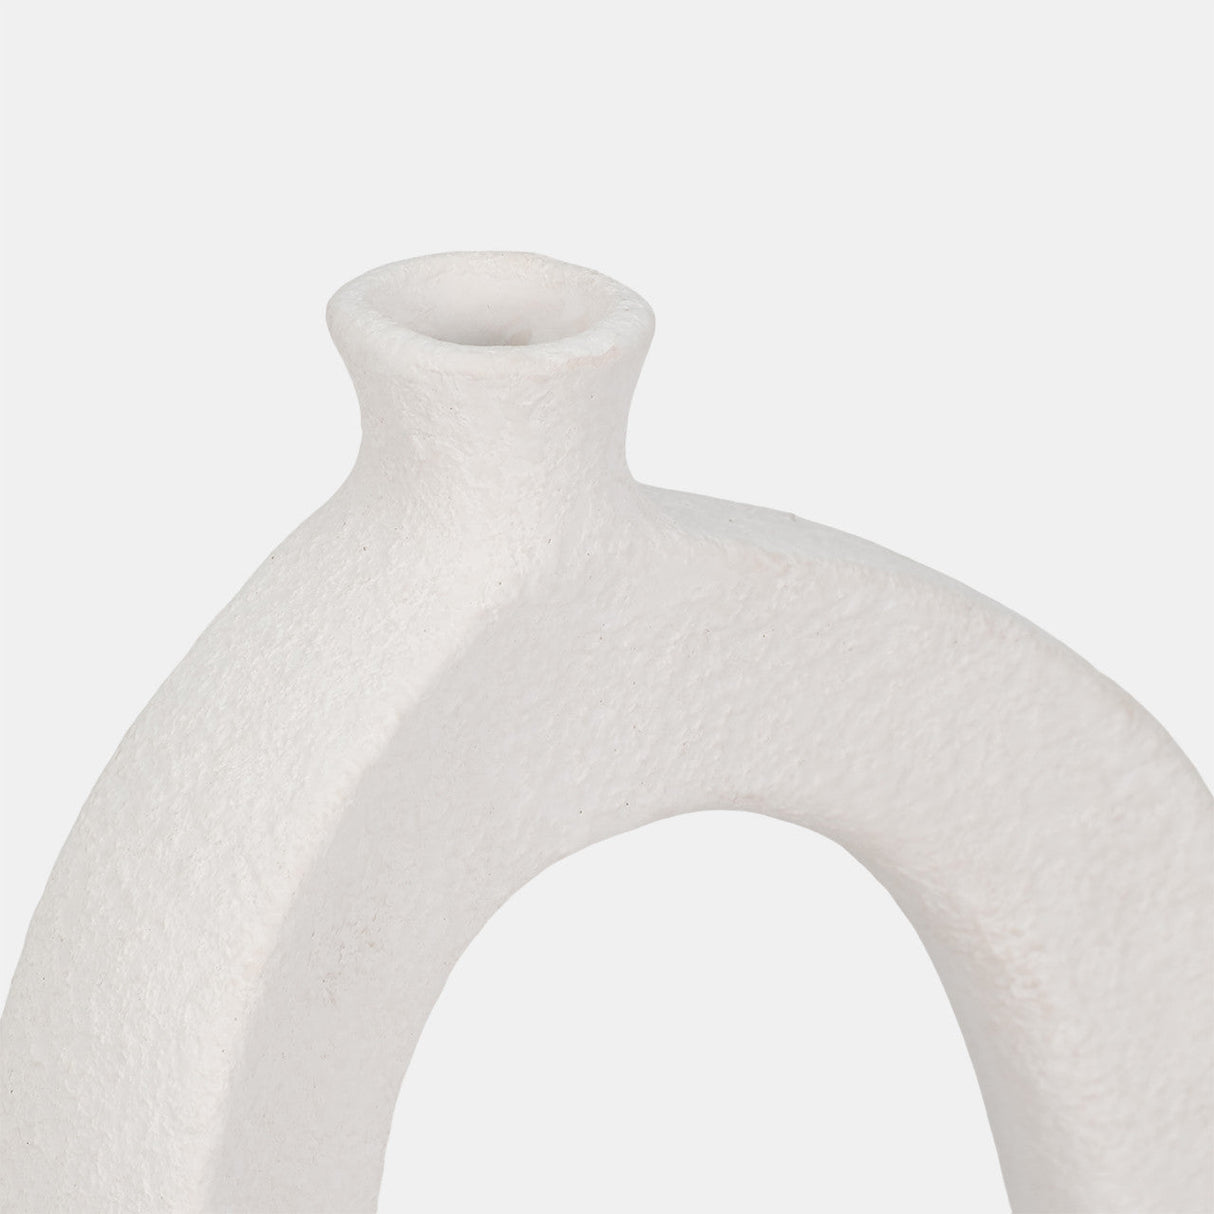 11" Open Cut-out Rough Vase, White